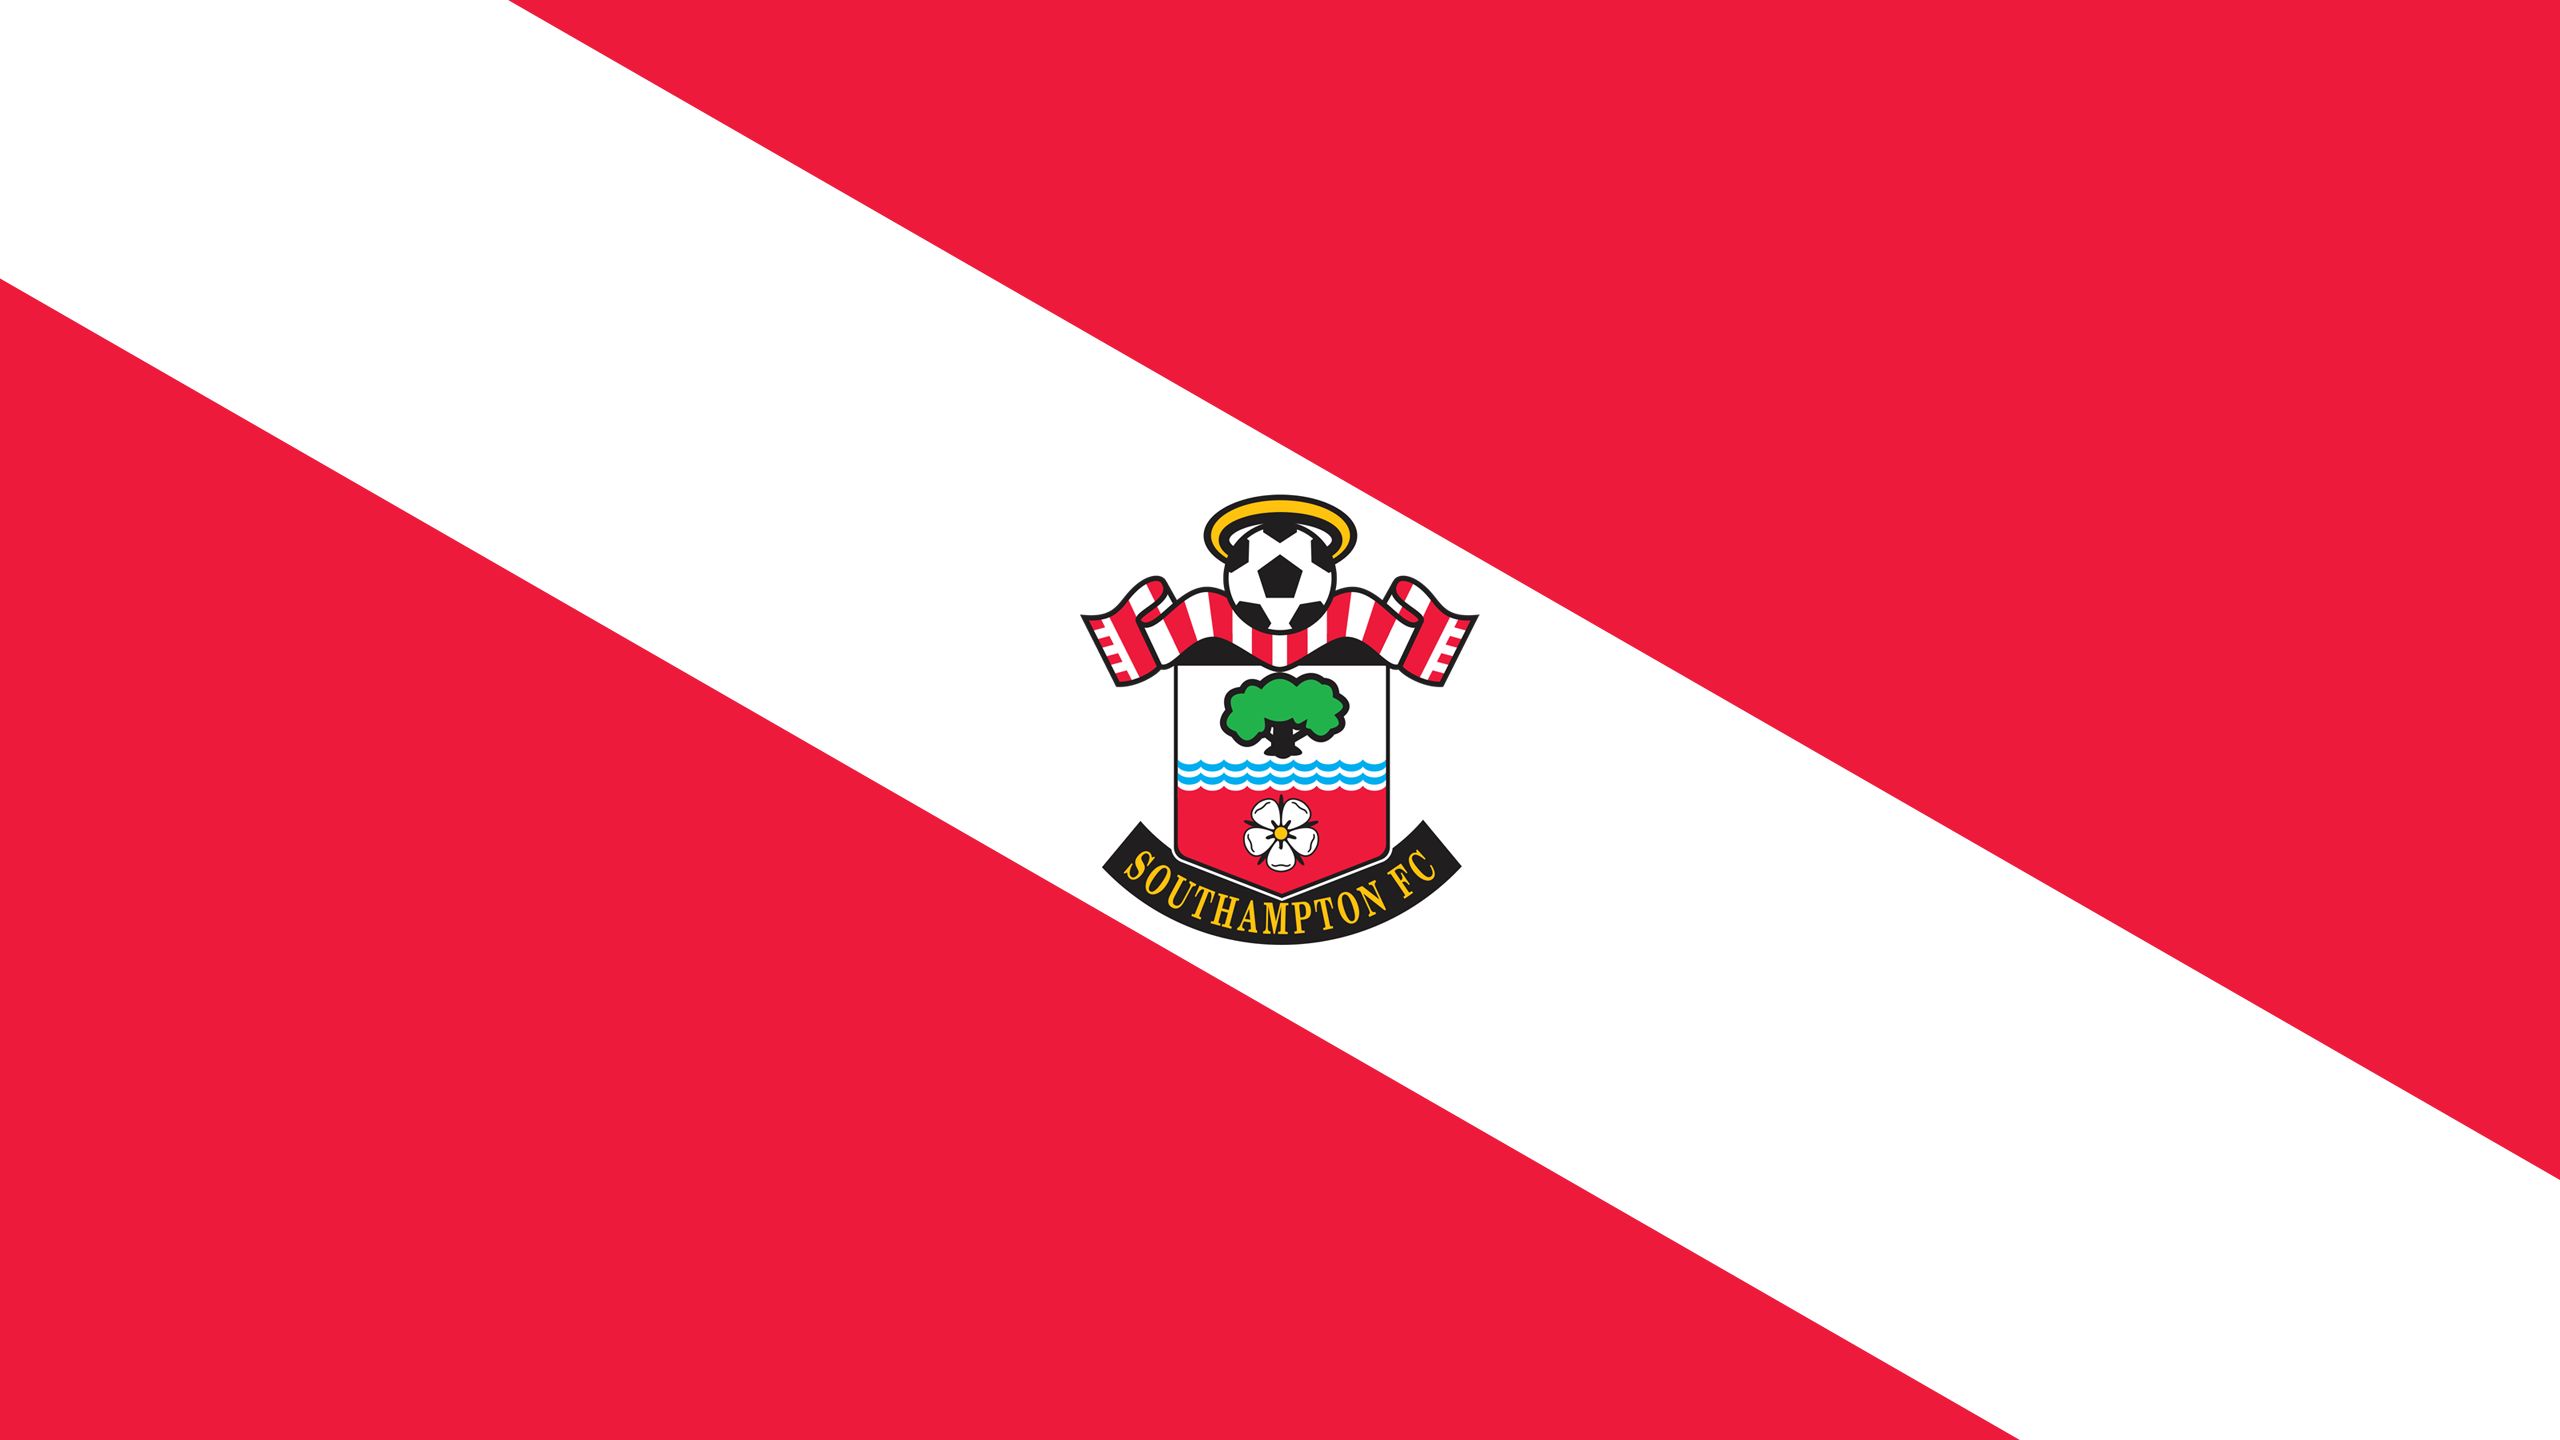 Baixar papel de parede para celular de Esportes, Futebol, Logotipo, Emblema, Southampton F C gratuito.